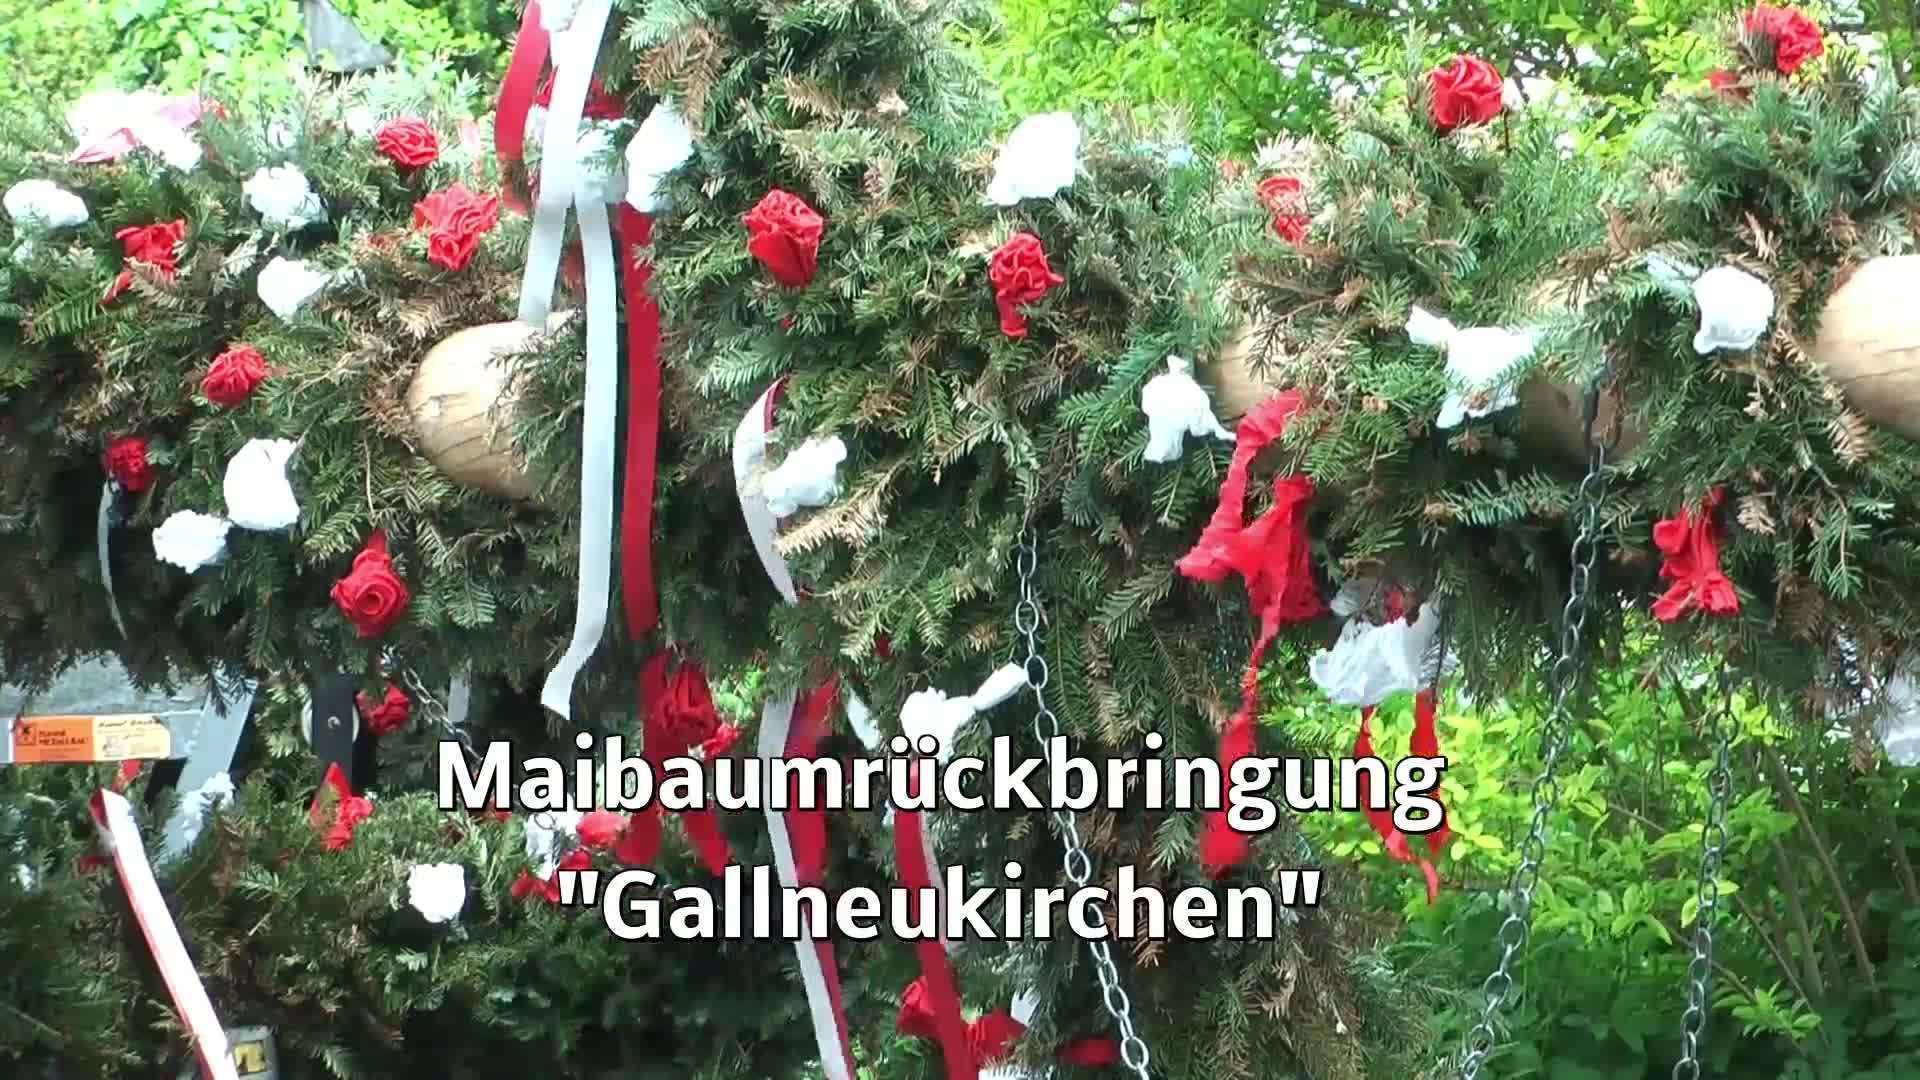 Maibaum-Rückbringung nach Gallneukirchen